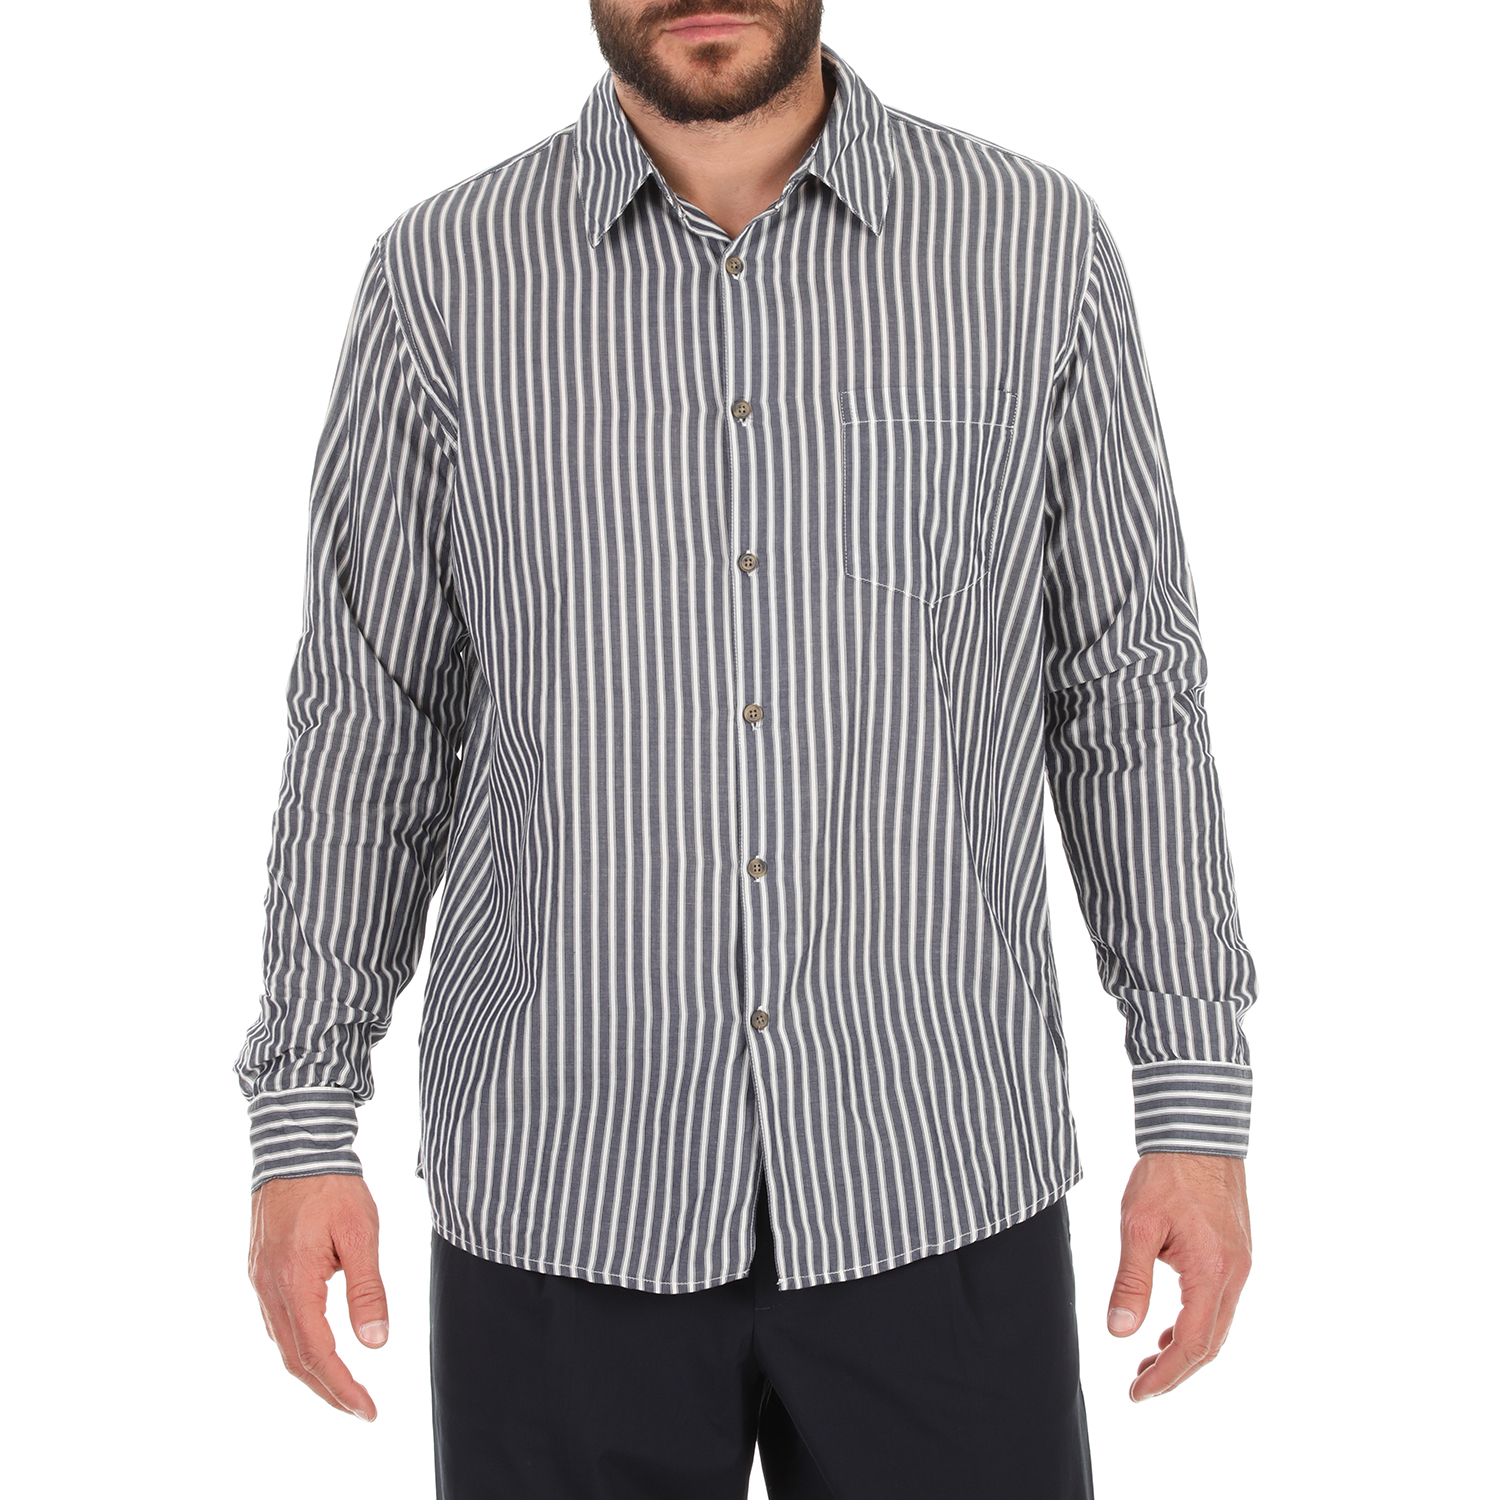 Ανδρικά/Ρούχα/Πουκάμισα/Μακρυμάνικα AMERICAN VINTAGE - Ανδρικό πουκάμισο AMERICAN VINTAGE μπλε λευκό